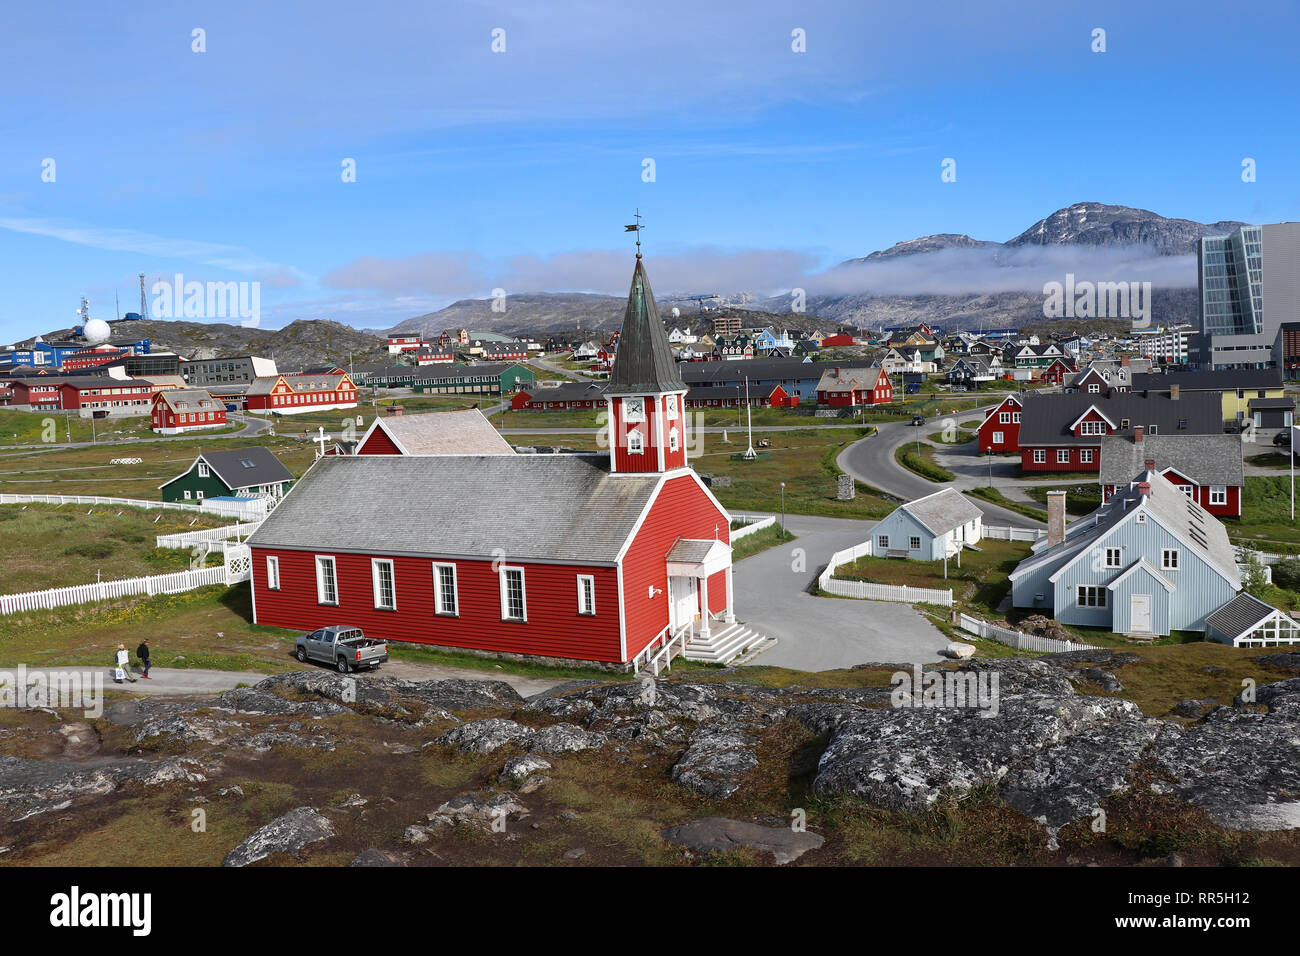 La cathédrale de Nuuk (Greenlandic: Annaassisitta Oqaluffia) ou l'église de notre Sauveur et les maisons colorées de Nuuk, la capitale du Groenland, contre le dos Banque D'Images